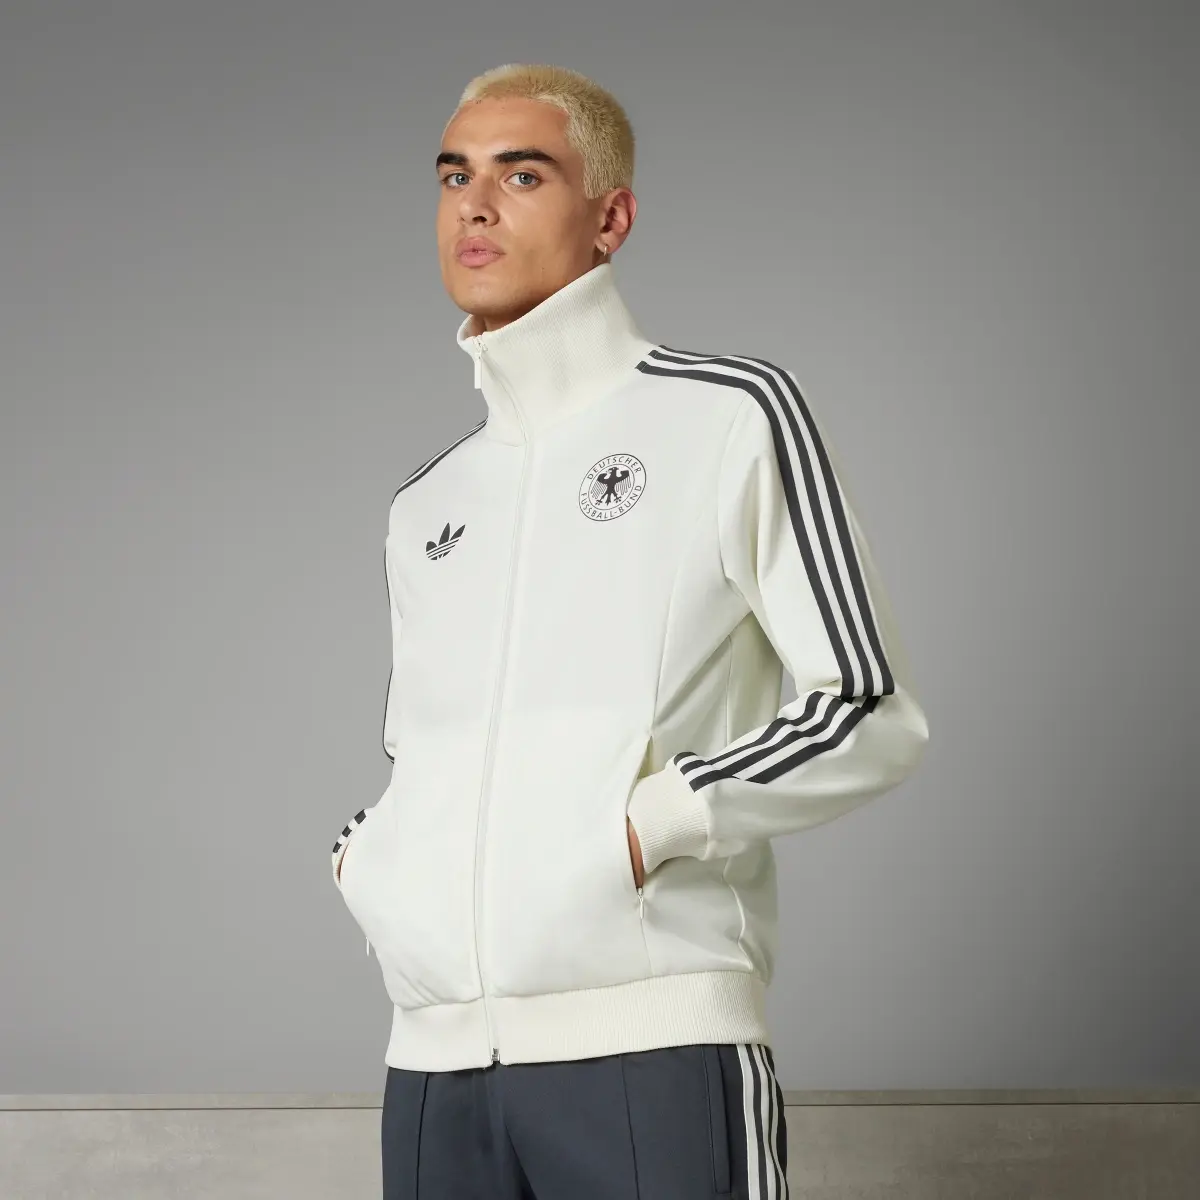 Adidas DFB Beckenbauer Originals Jacke. 1